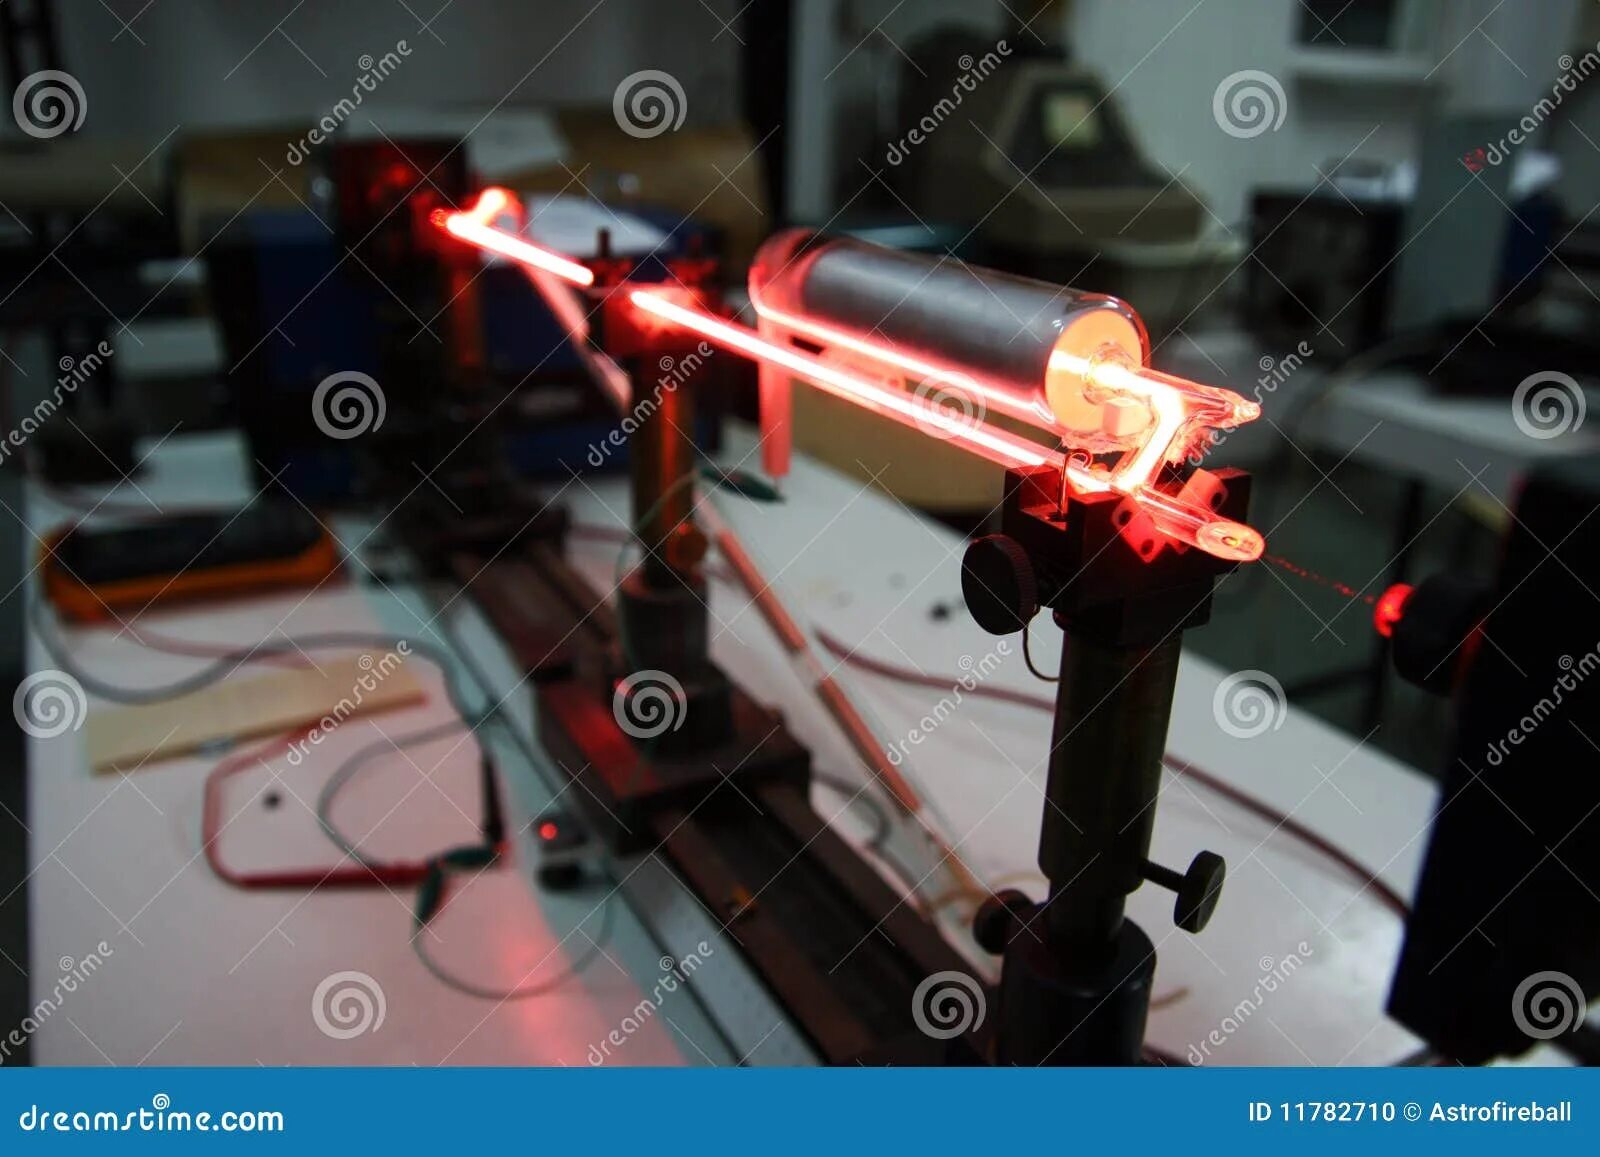 Helium-Neon Laser. Спектр гелий неонового лазера. Лазер гелий-неоновый he-ne. Первый гелий-неоновый газовый лазер. Длина волны неонового лазера